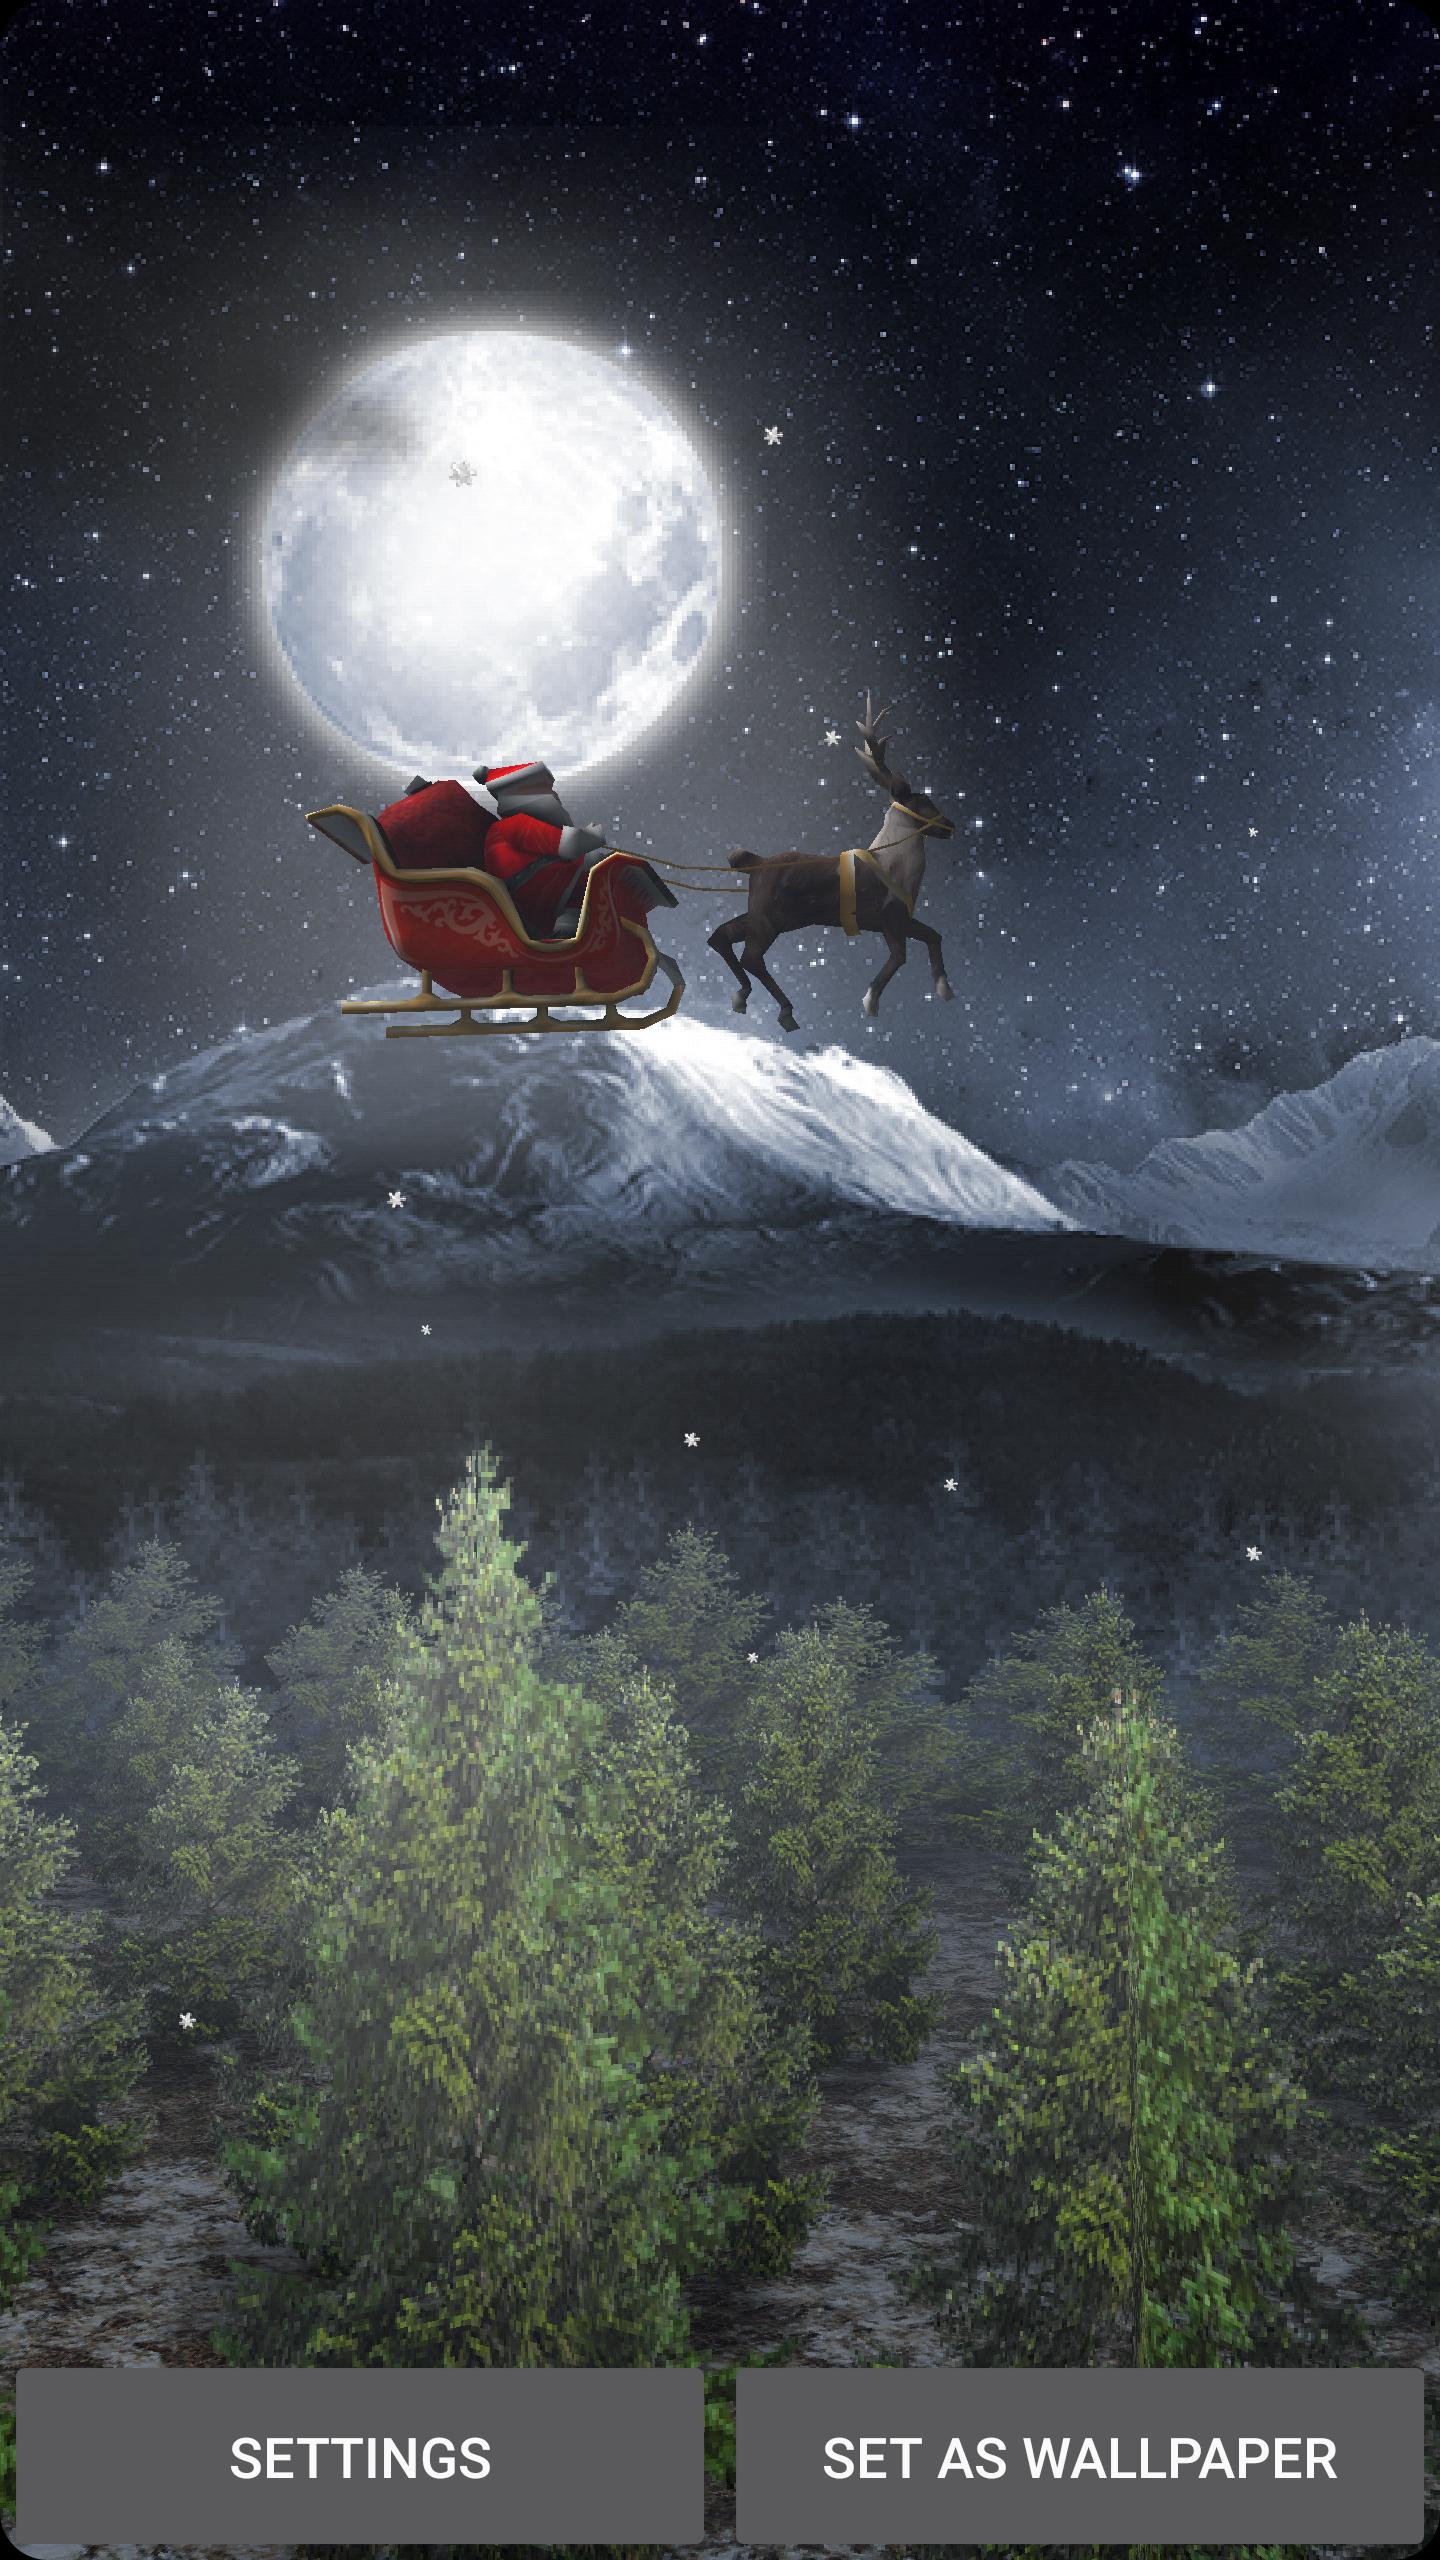 Giáng sinh đang đến rất gần rồi, hãy cùng tận hưởng không khí của ngày lễ tuyệt vời này với hình nền Santa 3D live wallpaper tuyệt đẹp! Với những hình ảnh tươi sáng và sinh động, bạn sẽ được truyền tải cảm giác hồng phấn và niềm vui dịp Giáng sinh của mình!